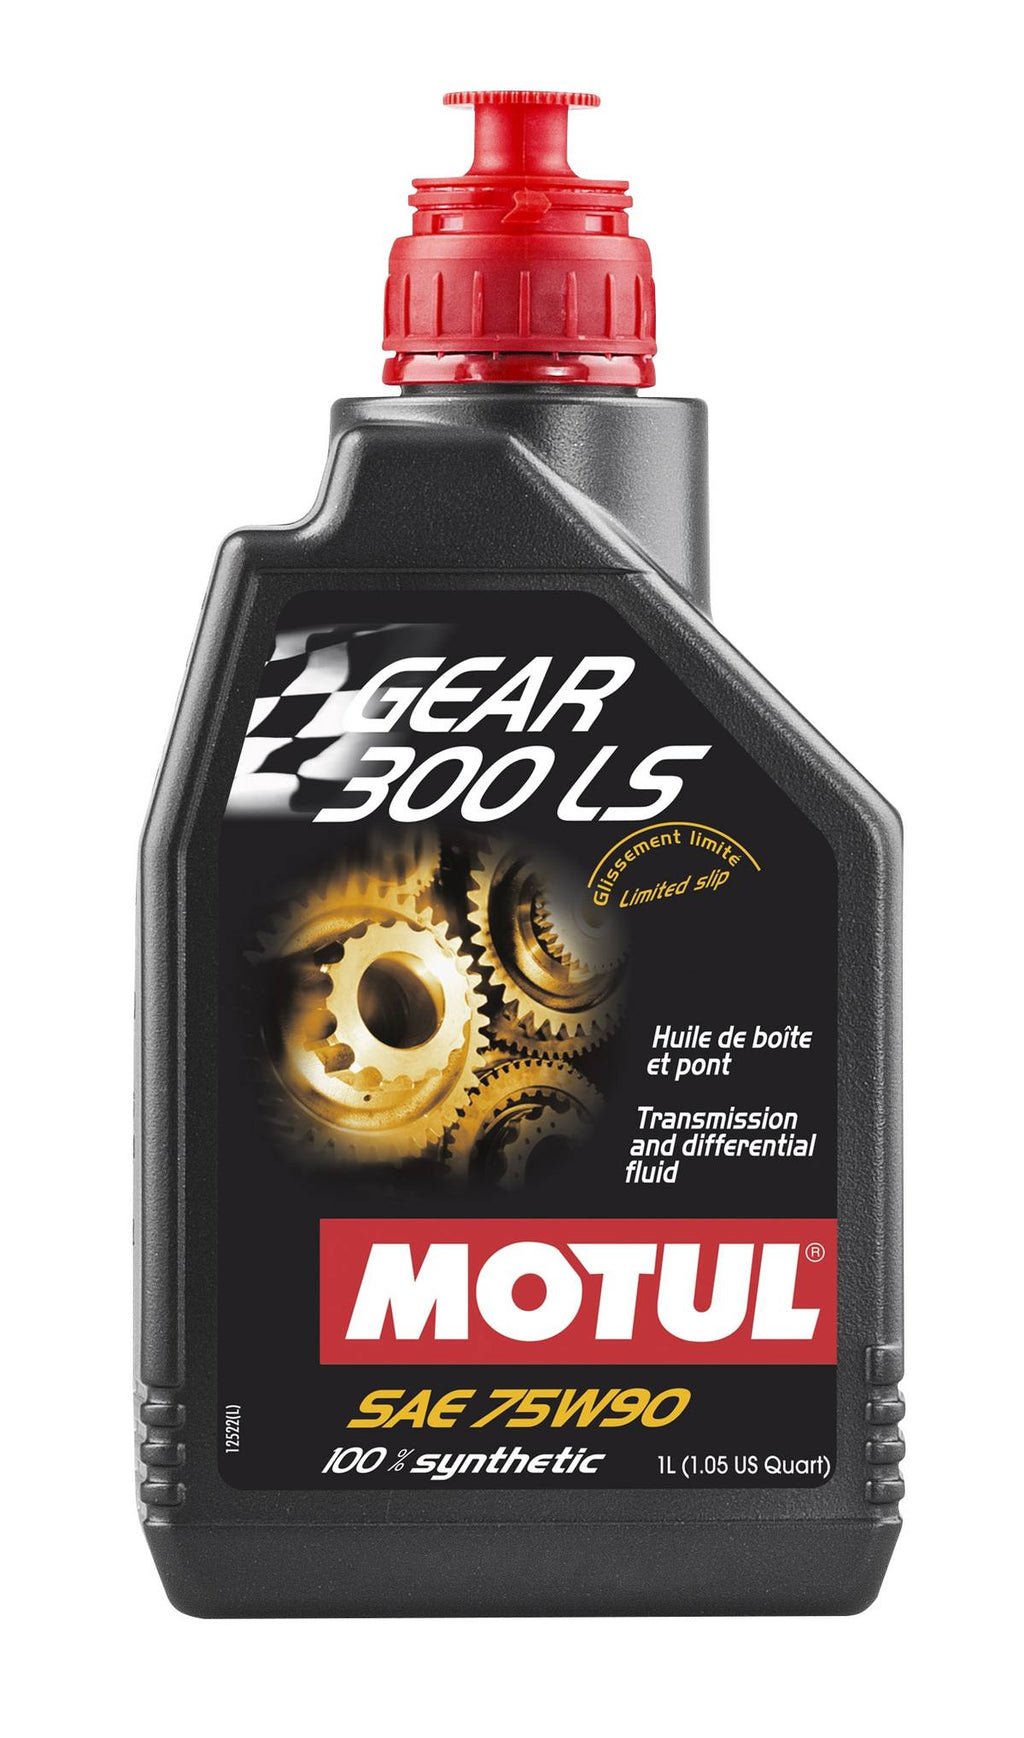 Motul - GEAR 300 LS Synthetic Gear Oil - 75W90